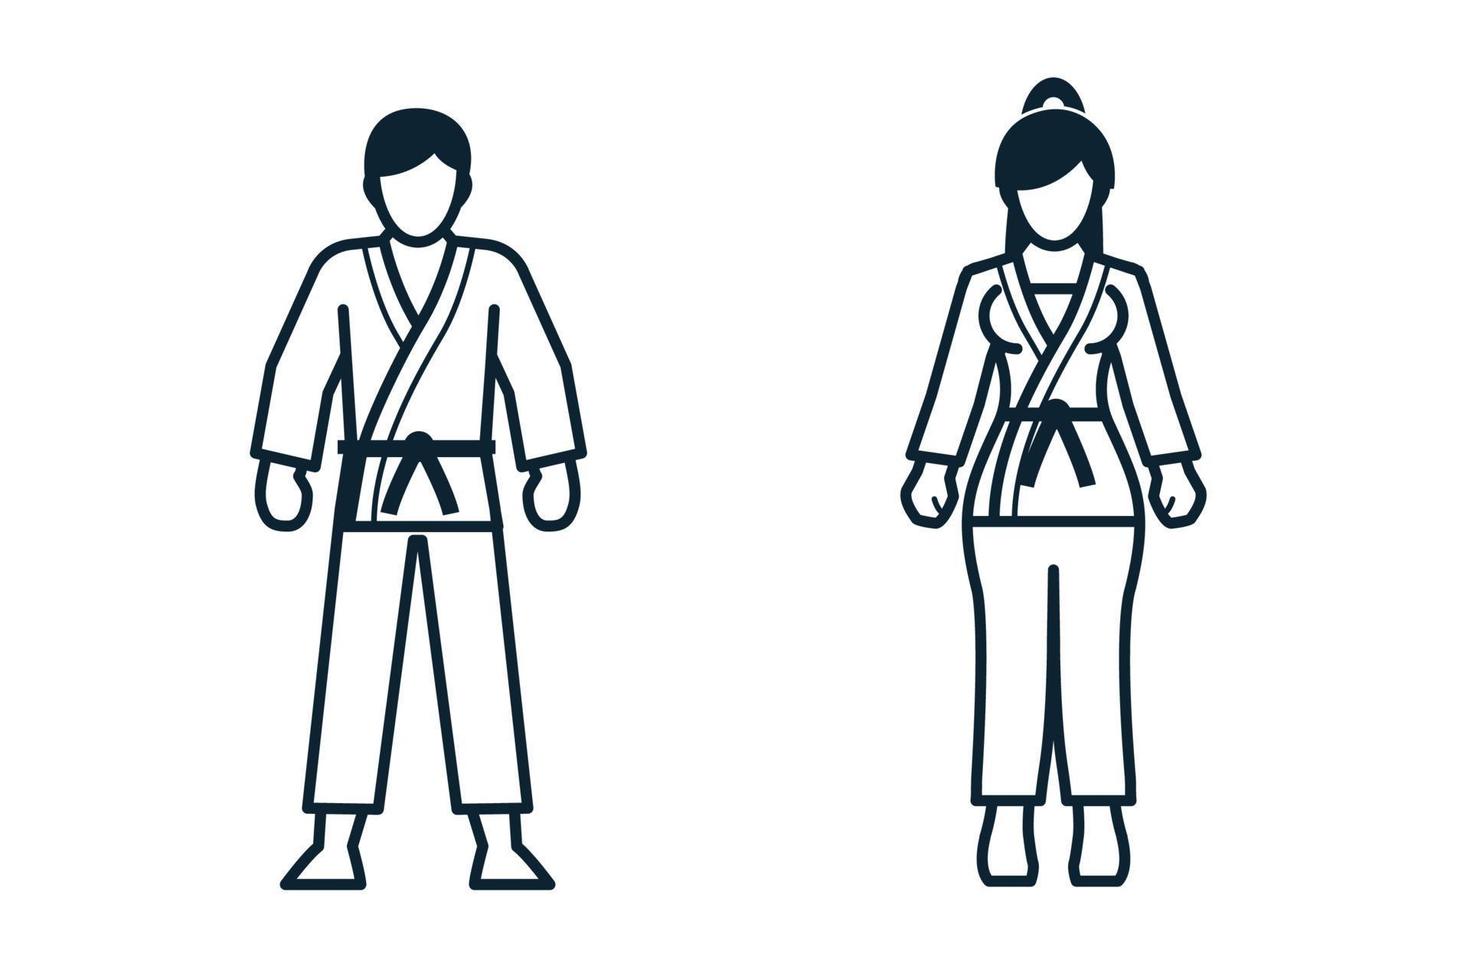 Karate, Sportspieler, Menschen und Kleidungsikonen mit weißem Hintergrund vektor